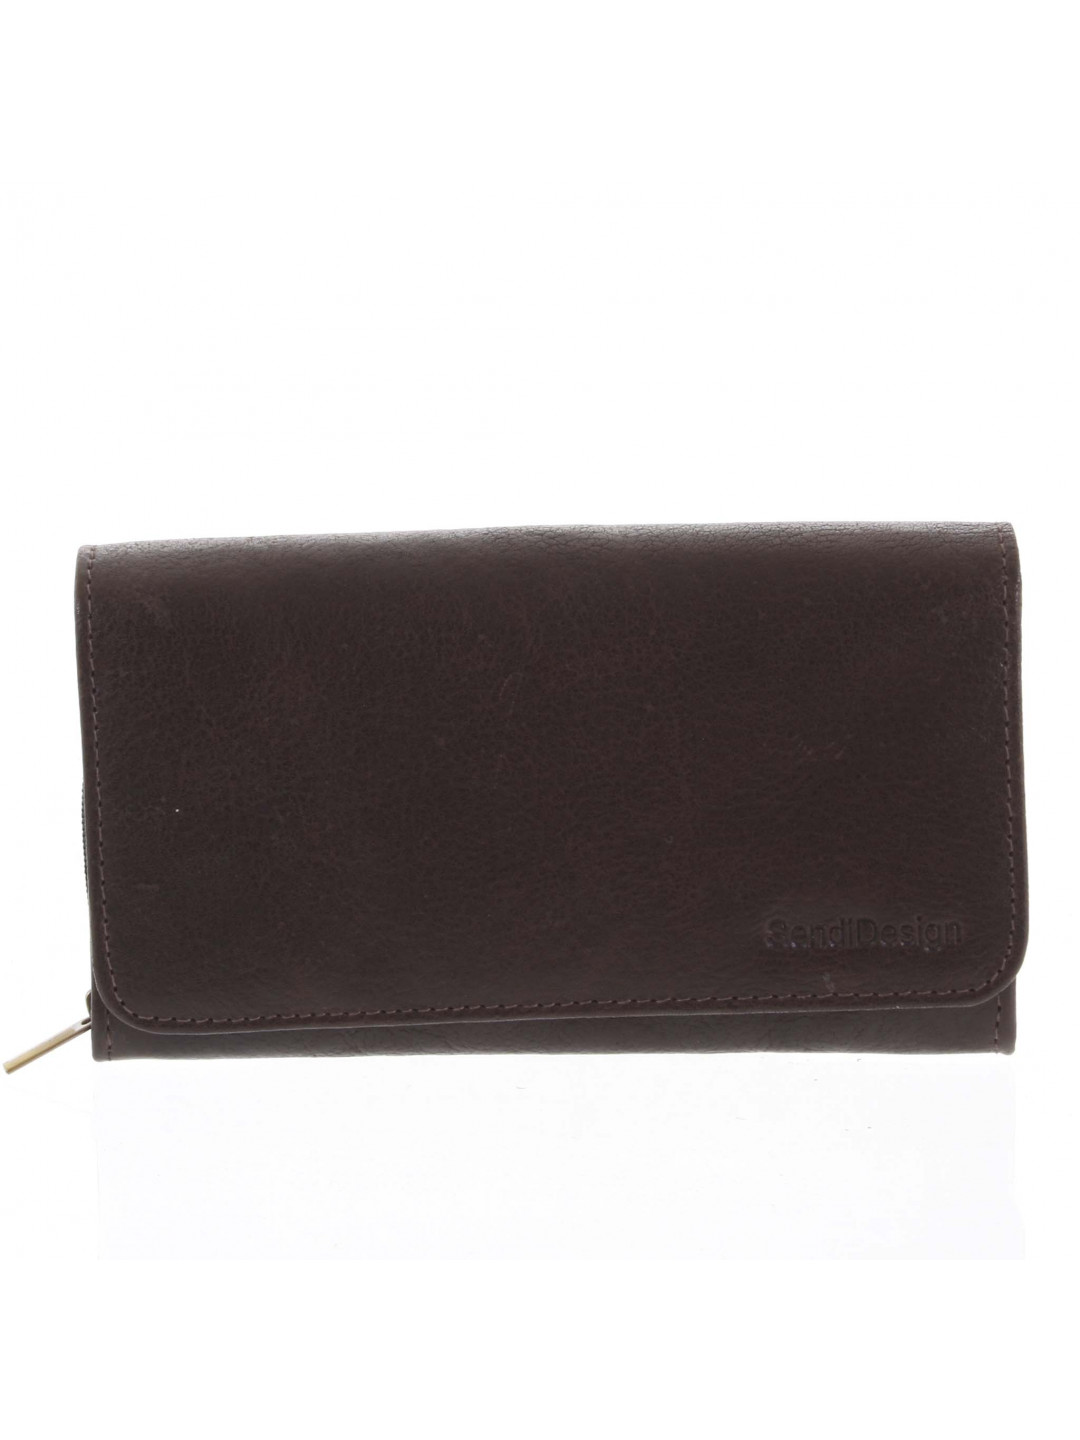 Dámská kožená peněženka tmavě hnědá – SendiDesign Really